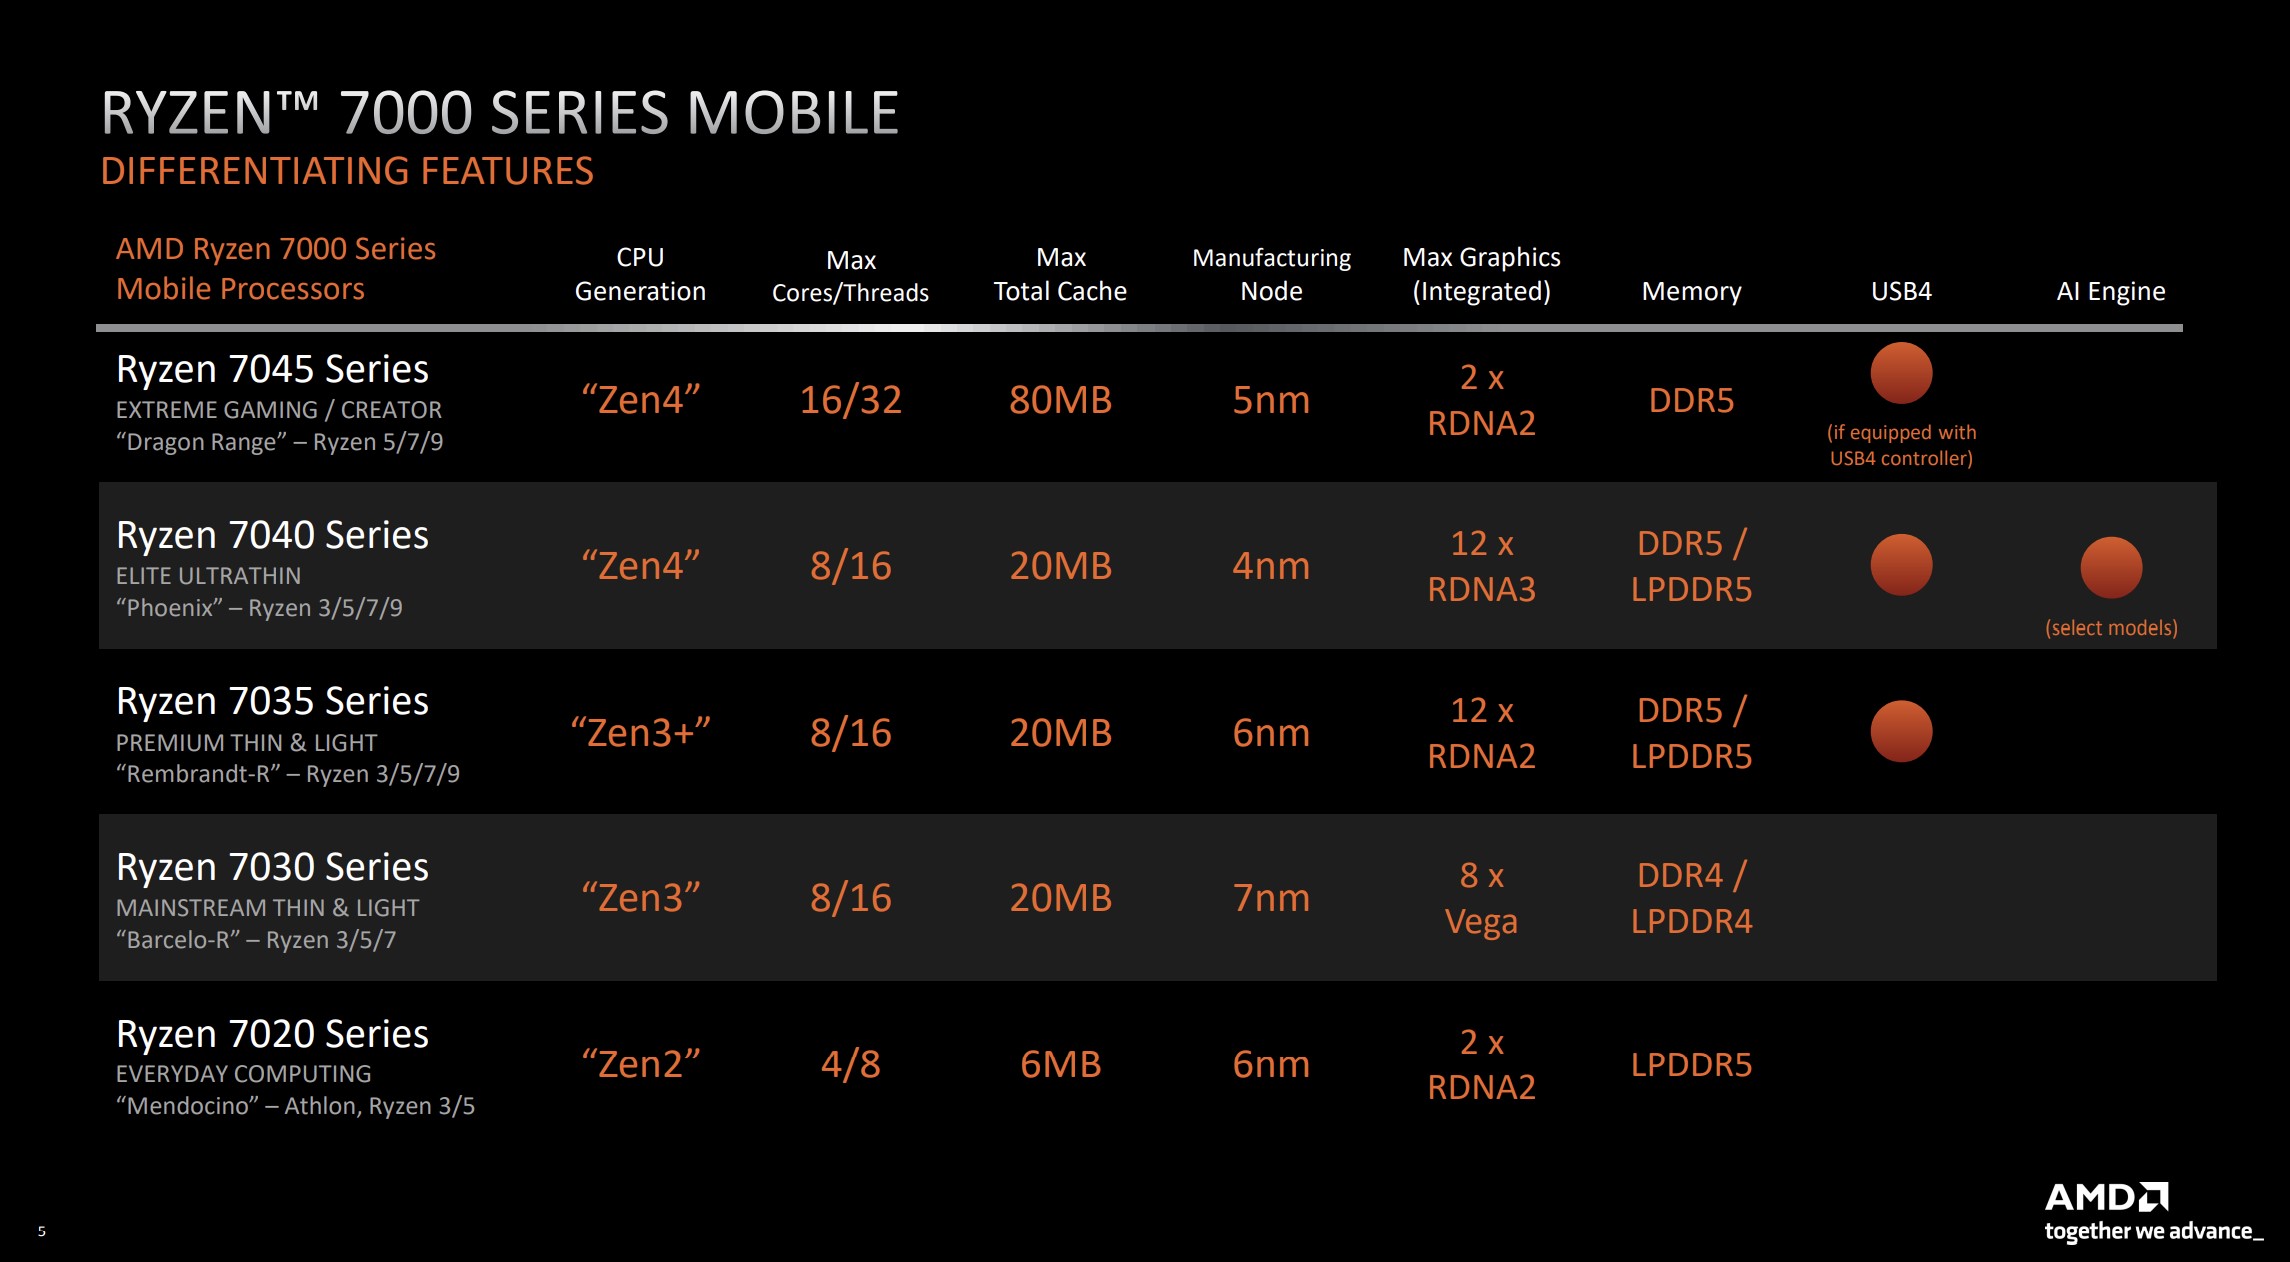 AMD's Ryzen 7000 mobile range with specs.